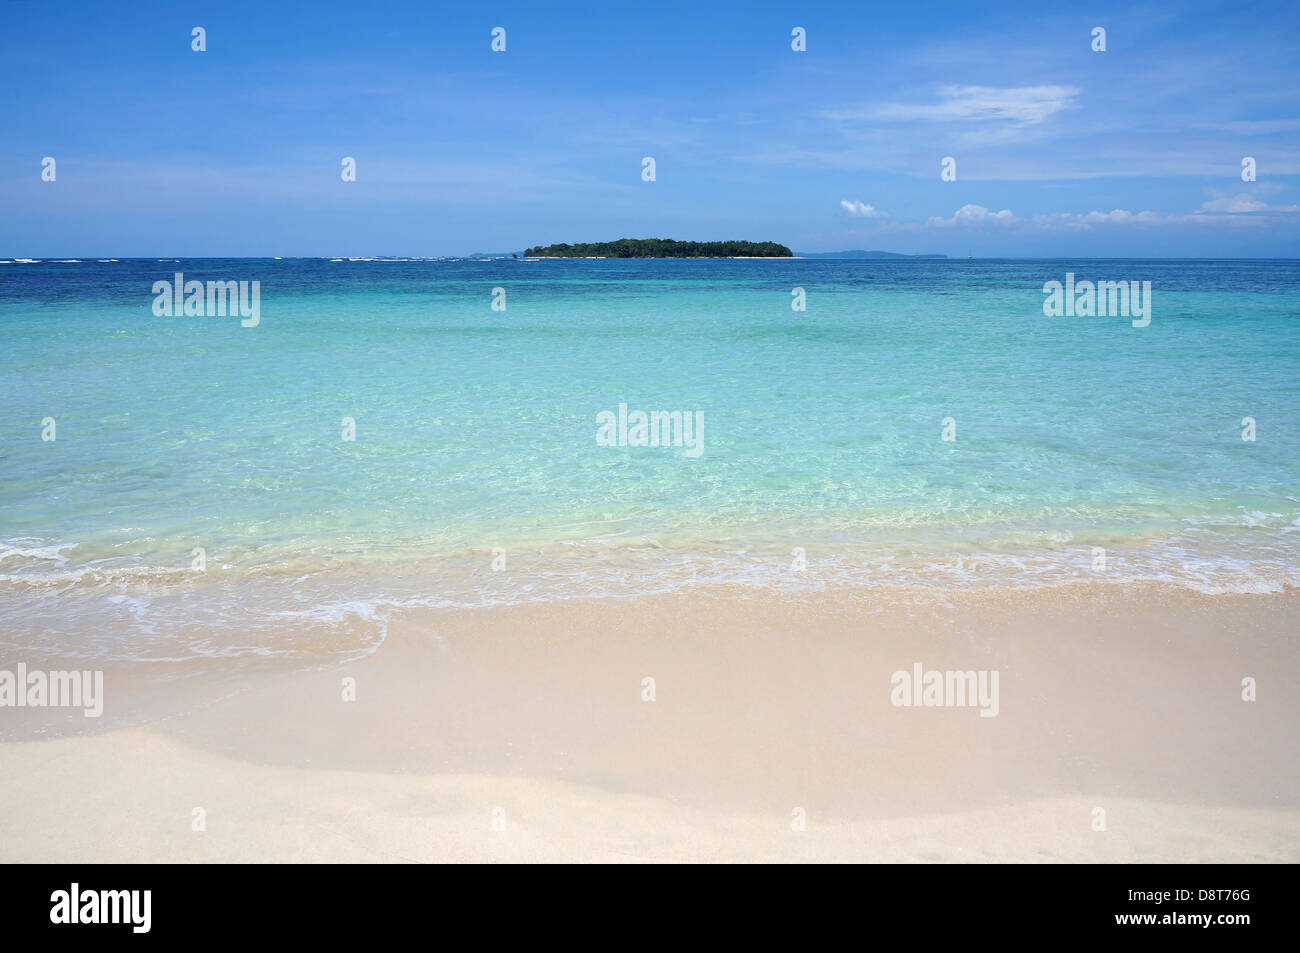 La plage de sable tropicale rive avec l'eau turquoise et d'une île à l'horizon, la mer des Caraïbes Banque D'Images